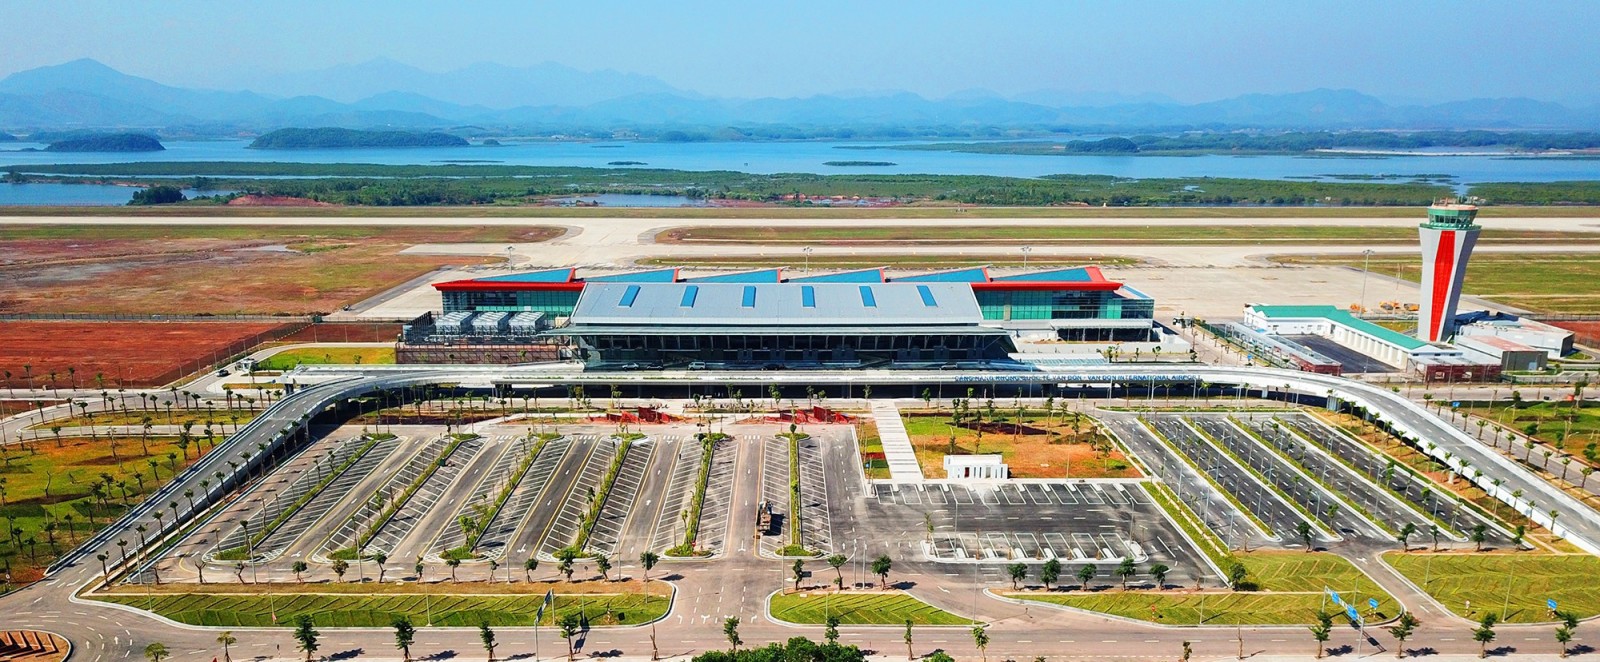 Tổng thể kiến trúc Cảng Hàng không quốc tế Vân Đồn - Quảng Ninh